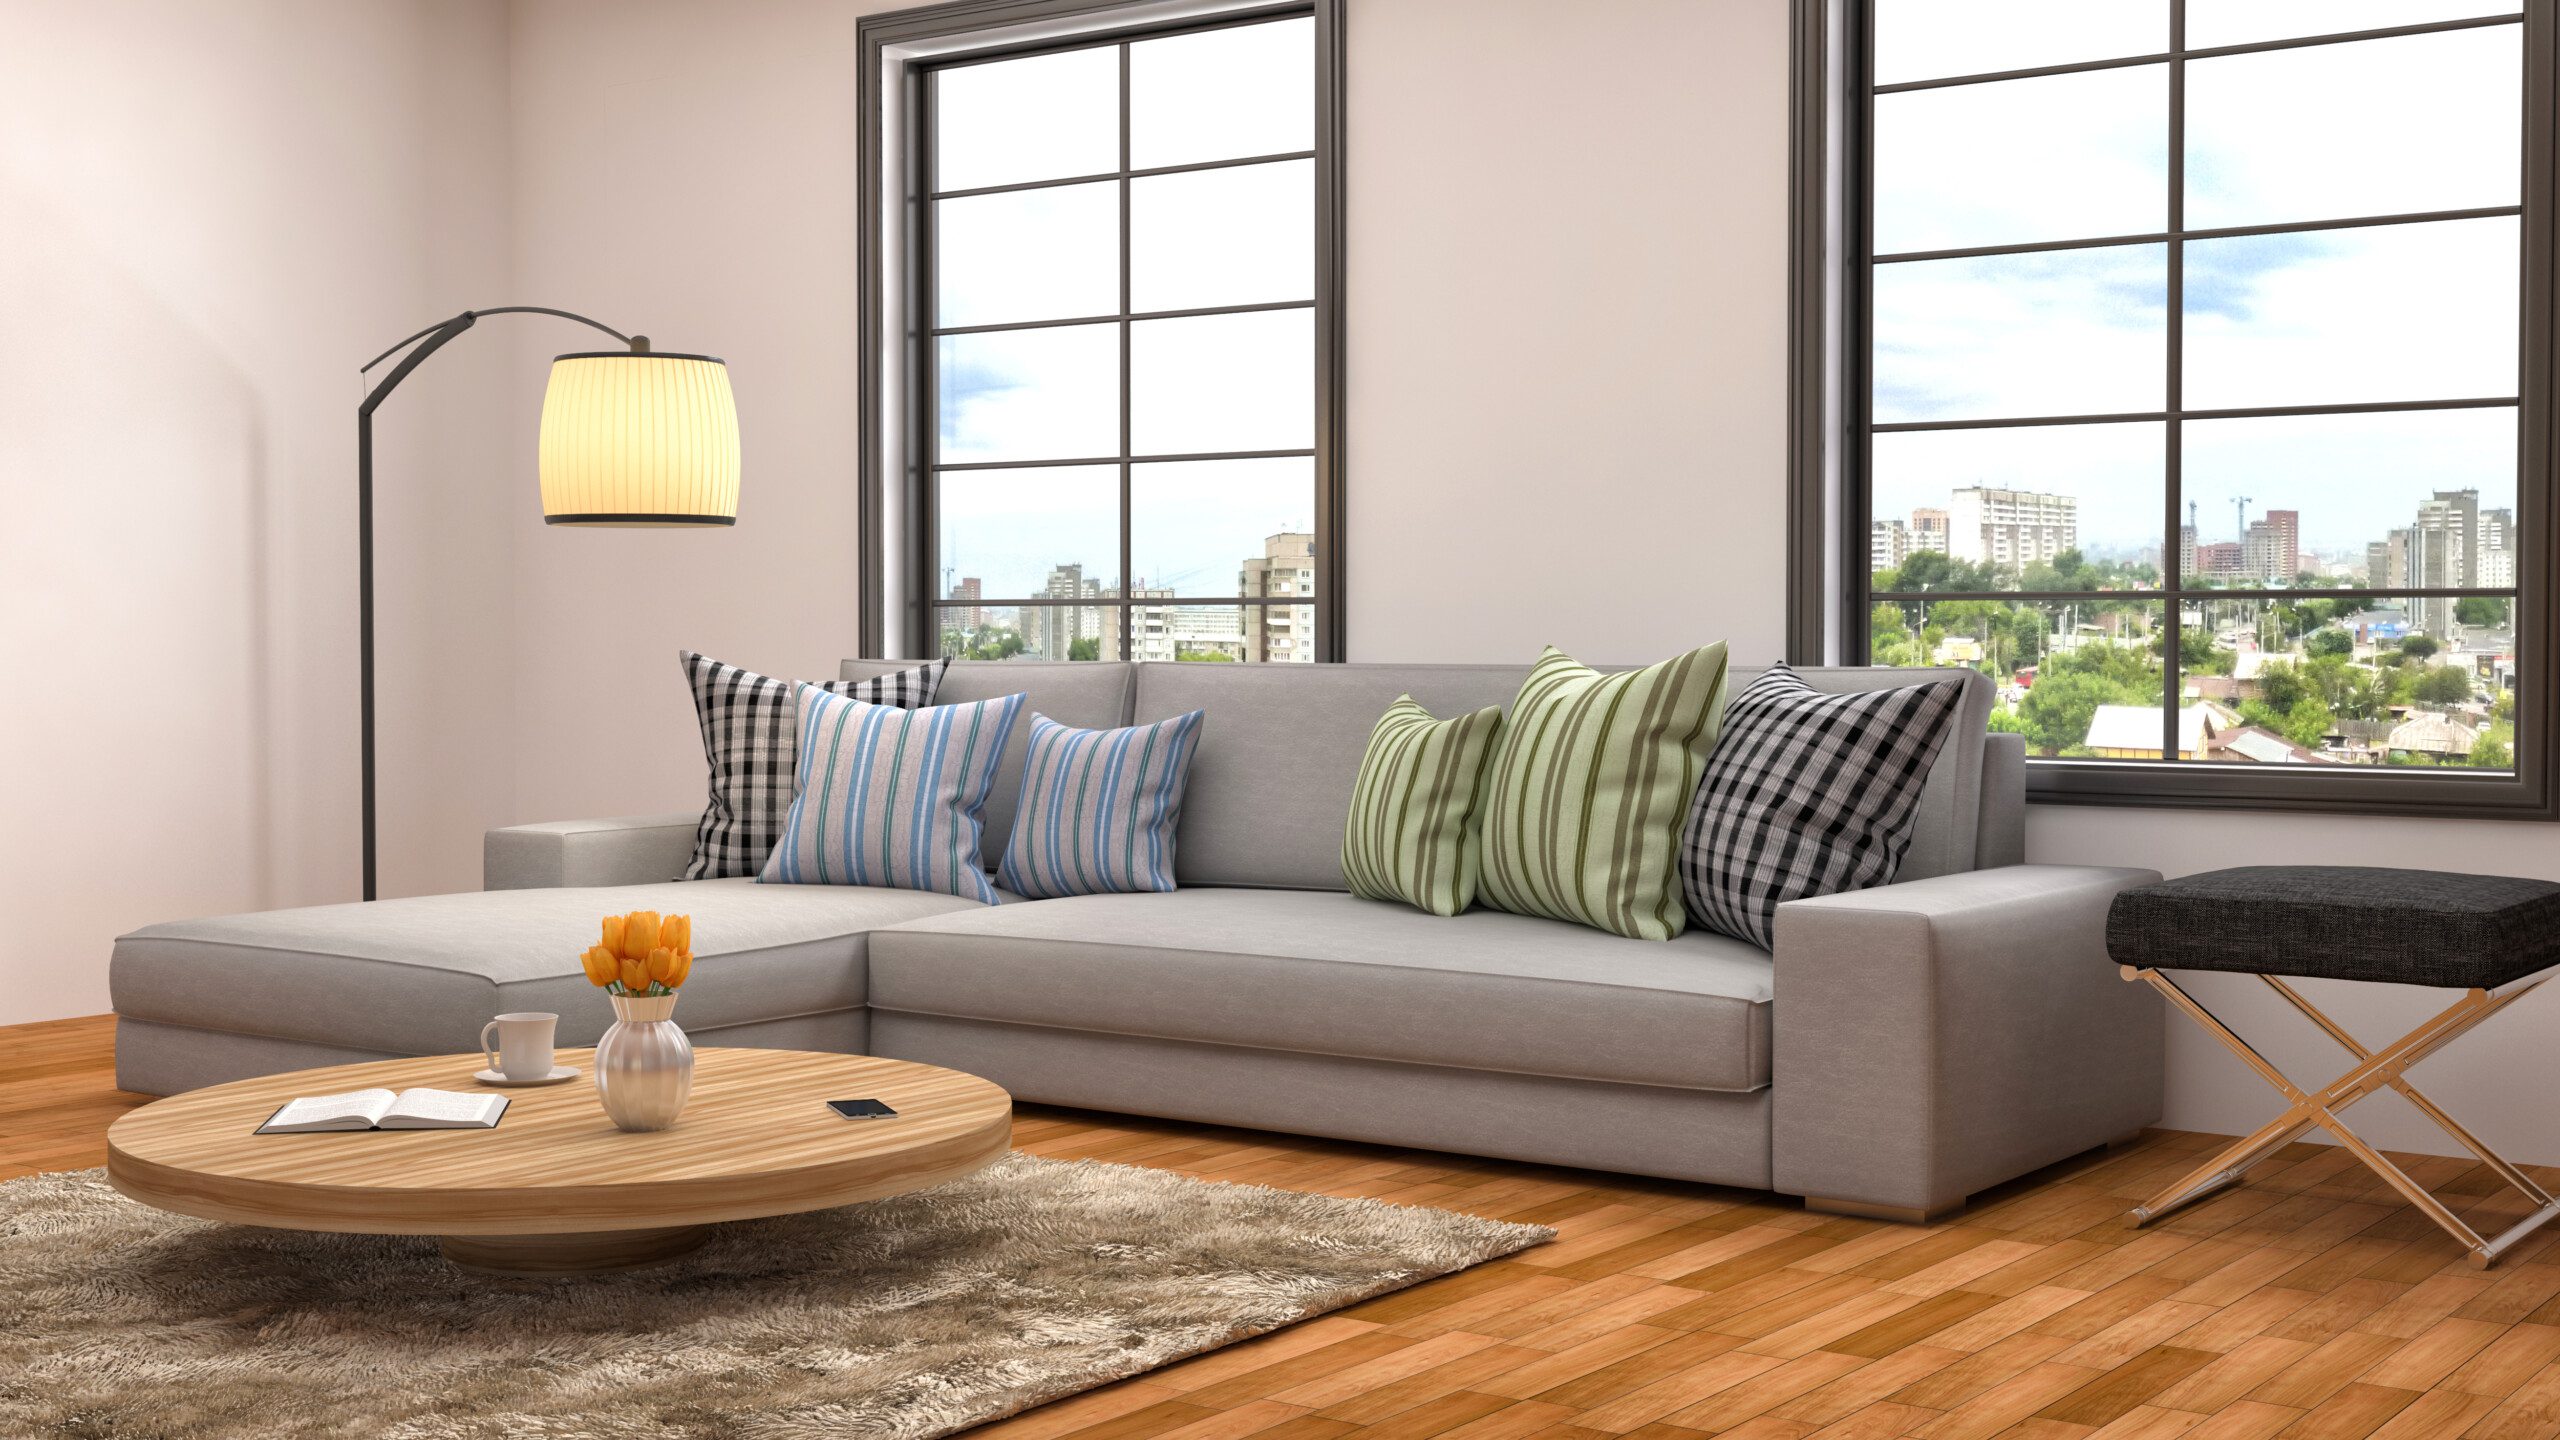 Sala de estar com sofá cinza, almofadas decorativas, tapete e mesa de centro de madeira. 